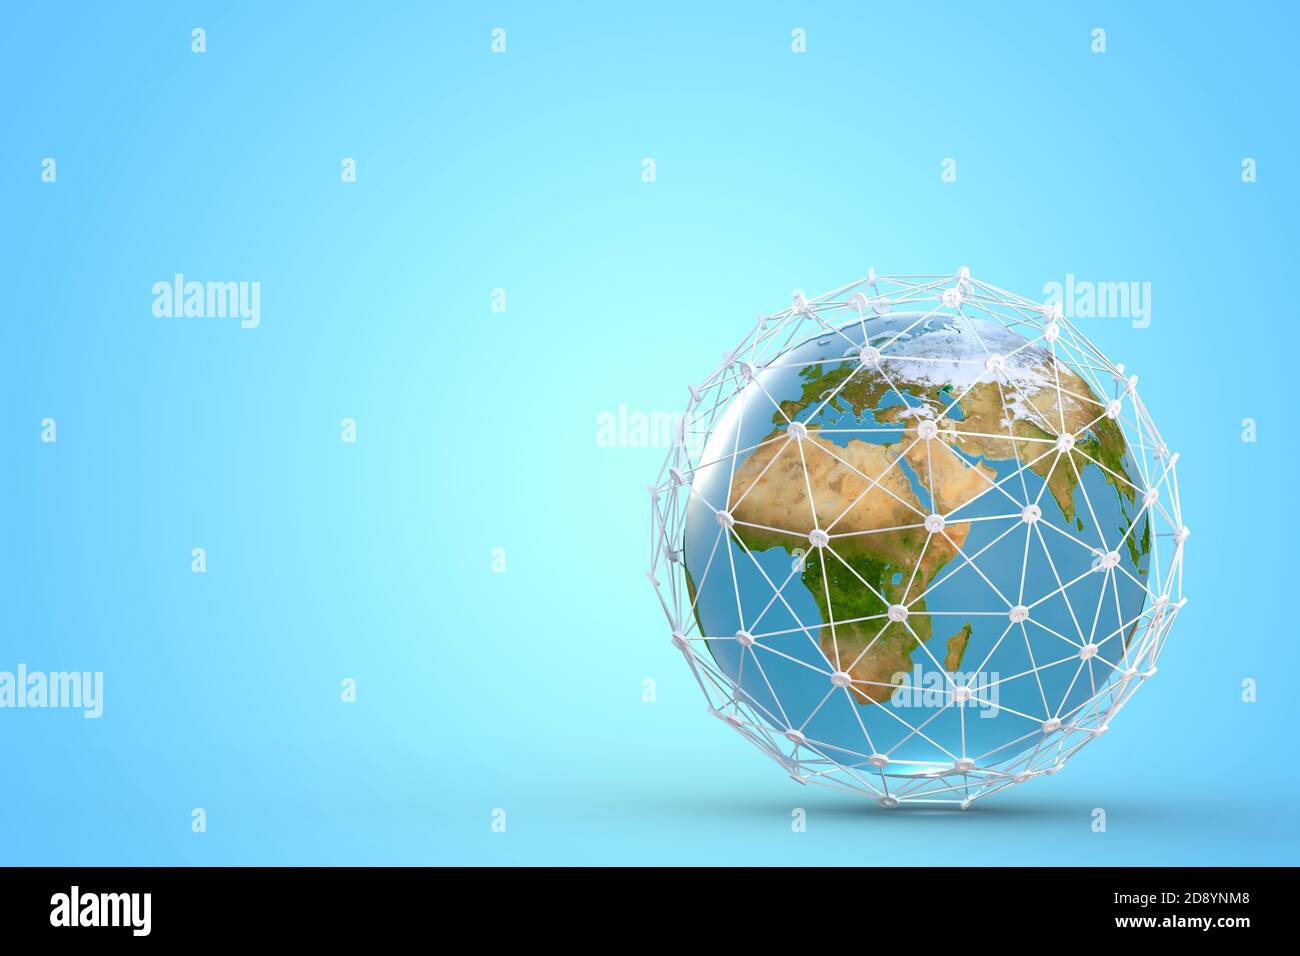 Concetto di rete con globo terrestre, alta velocità, telecomunicazioni mobili a banda larga, illustrazione 5g o GPS 3d Foto Stock